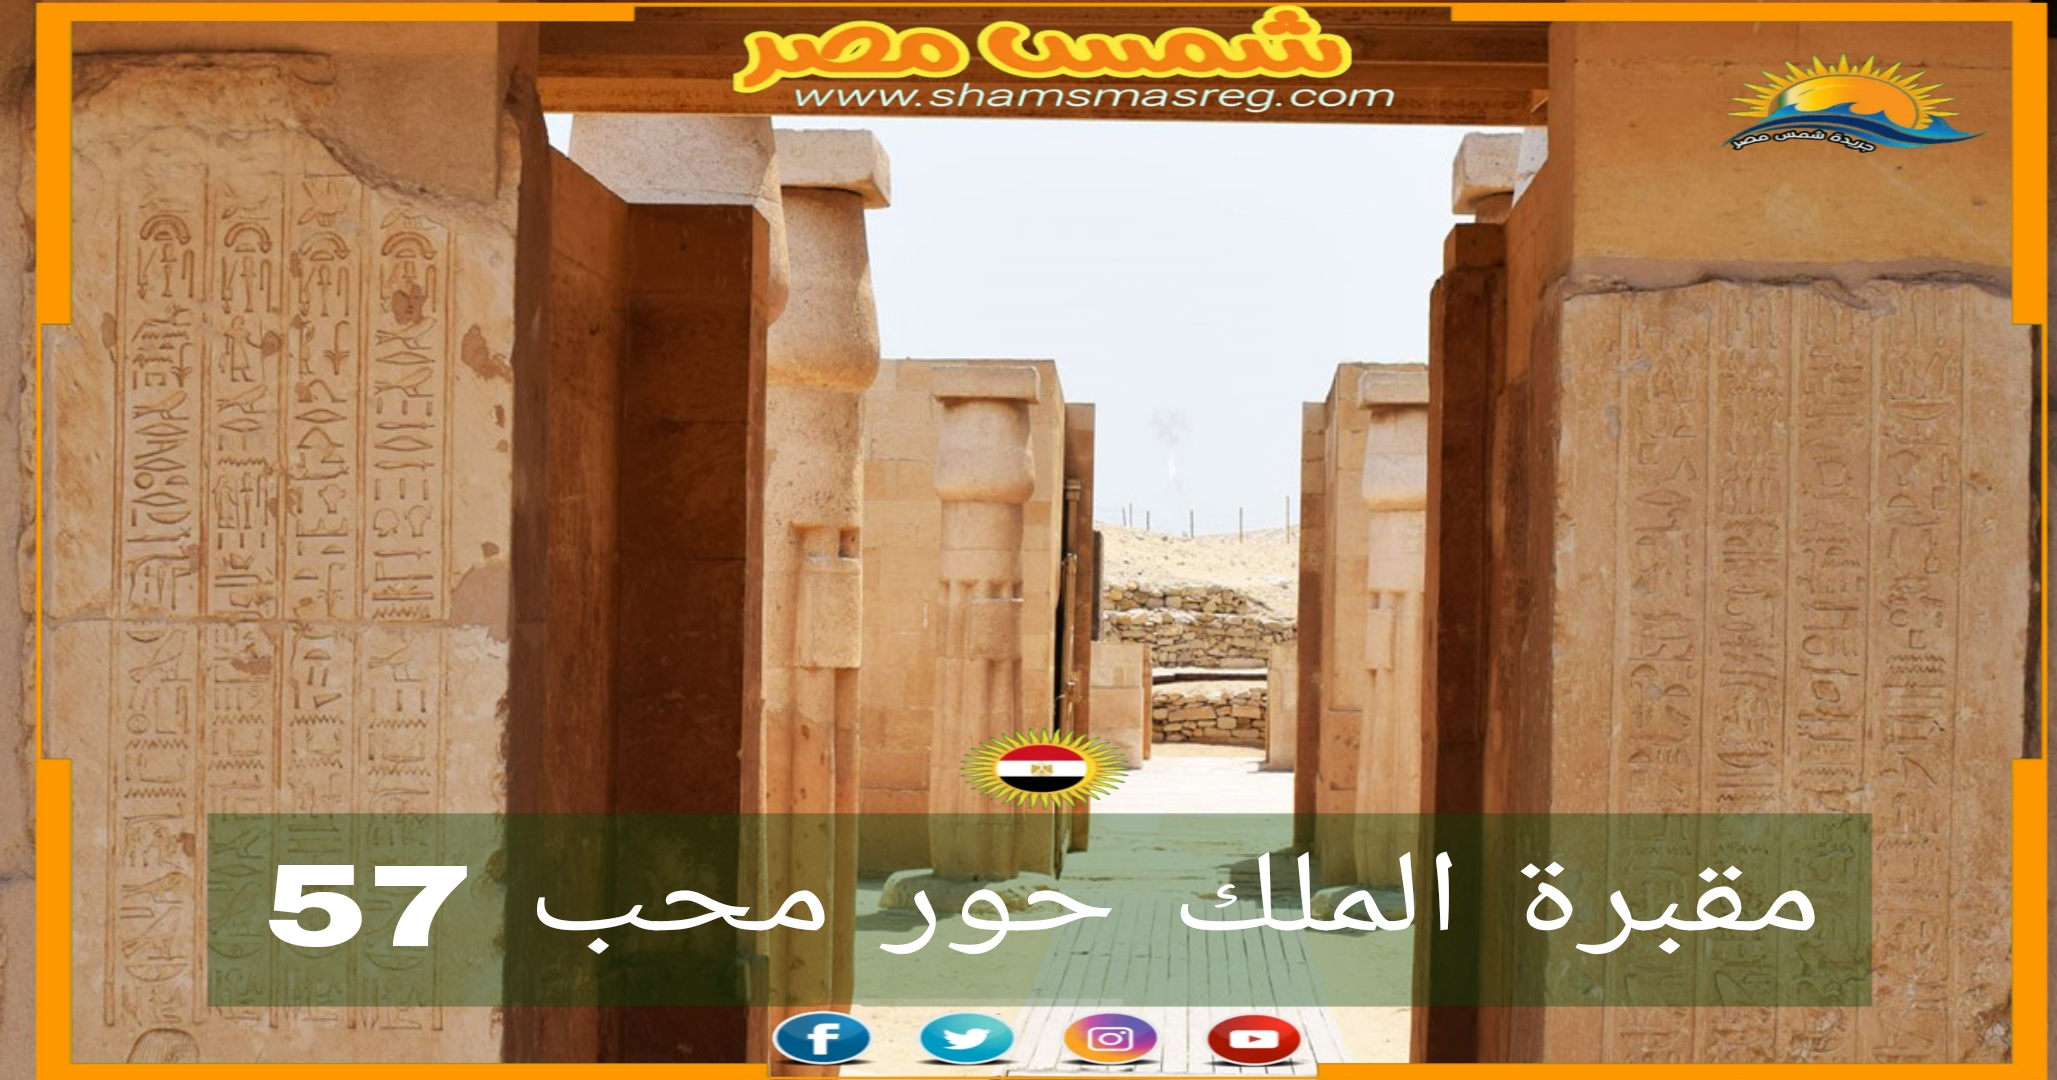 شمس مصر/ مقبرة الملك حور محب رقم 57